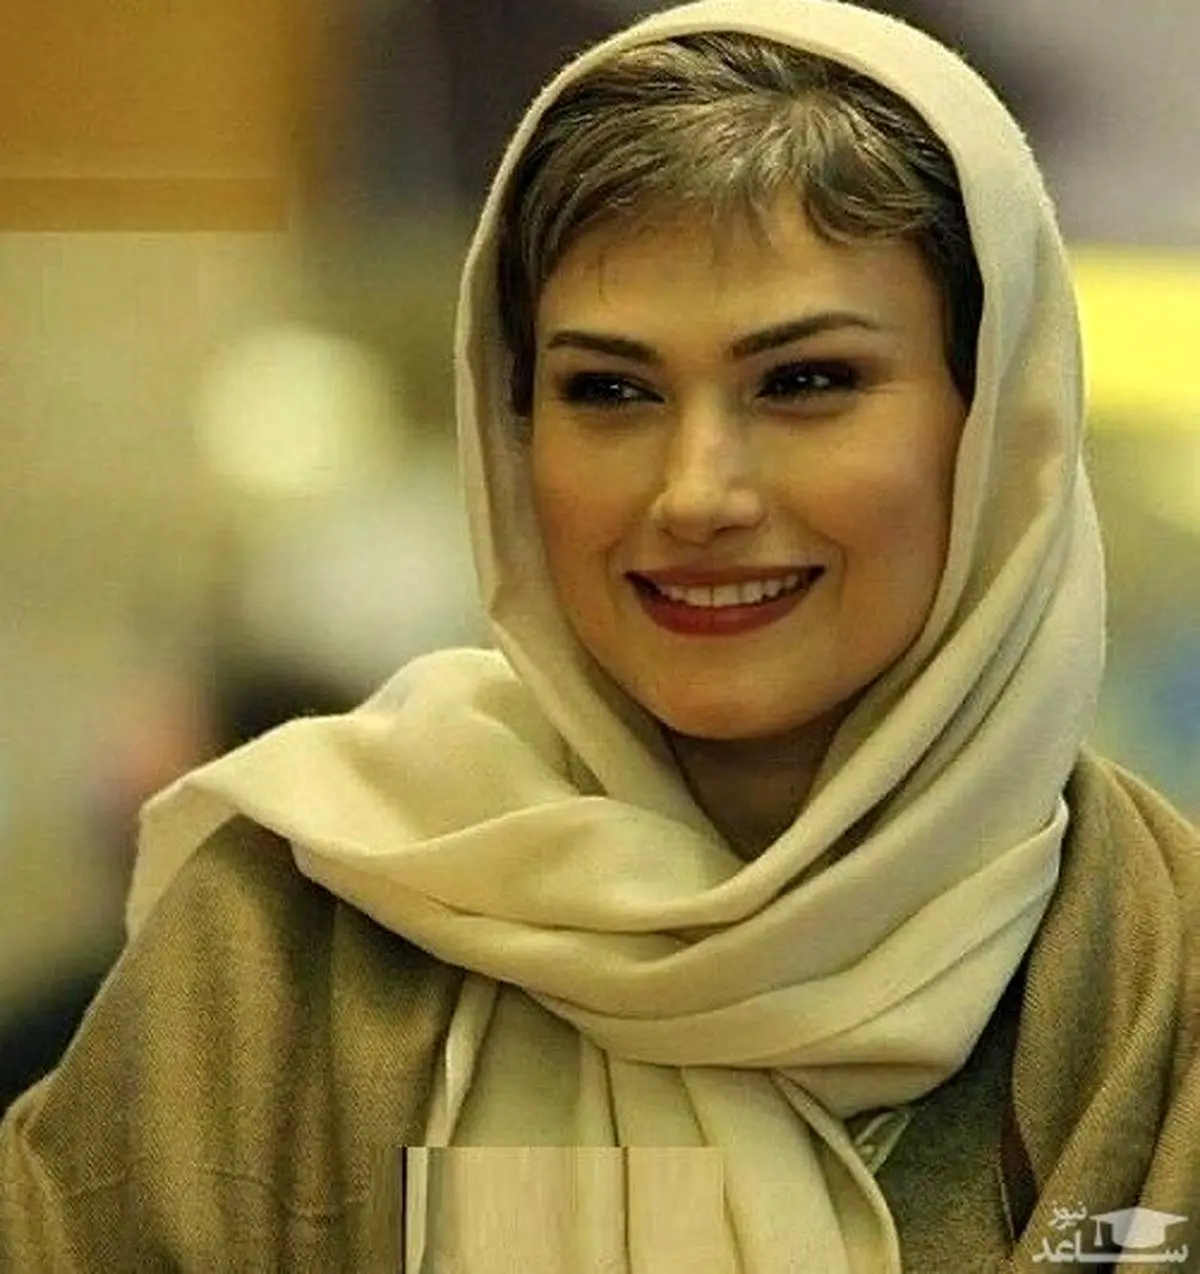 غوغای متور سواری خانم بازیگر در تهران |زنان مجوز متور دریافت کردند؟